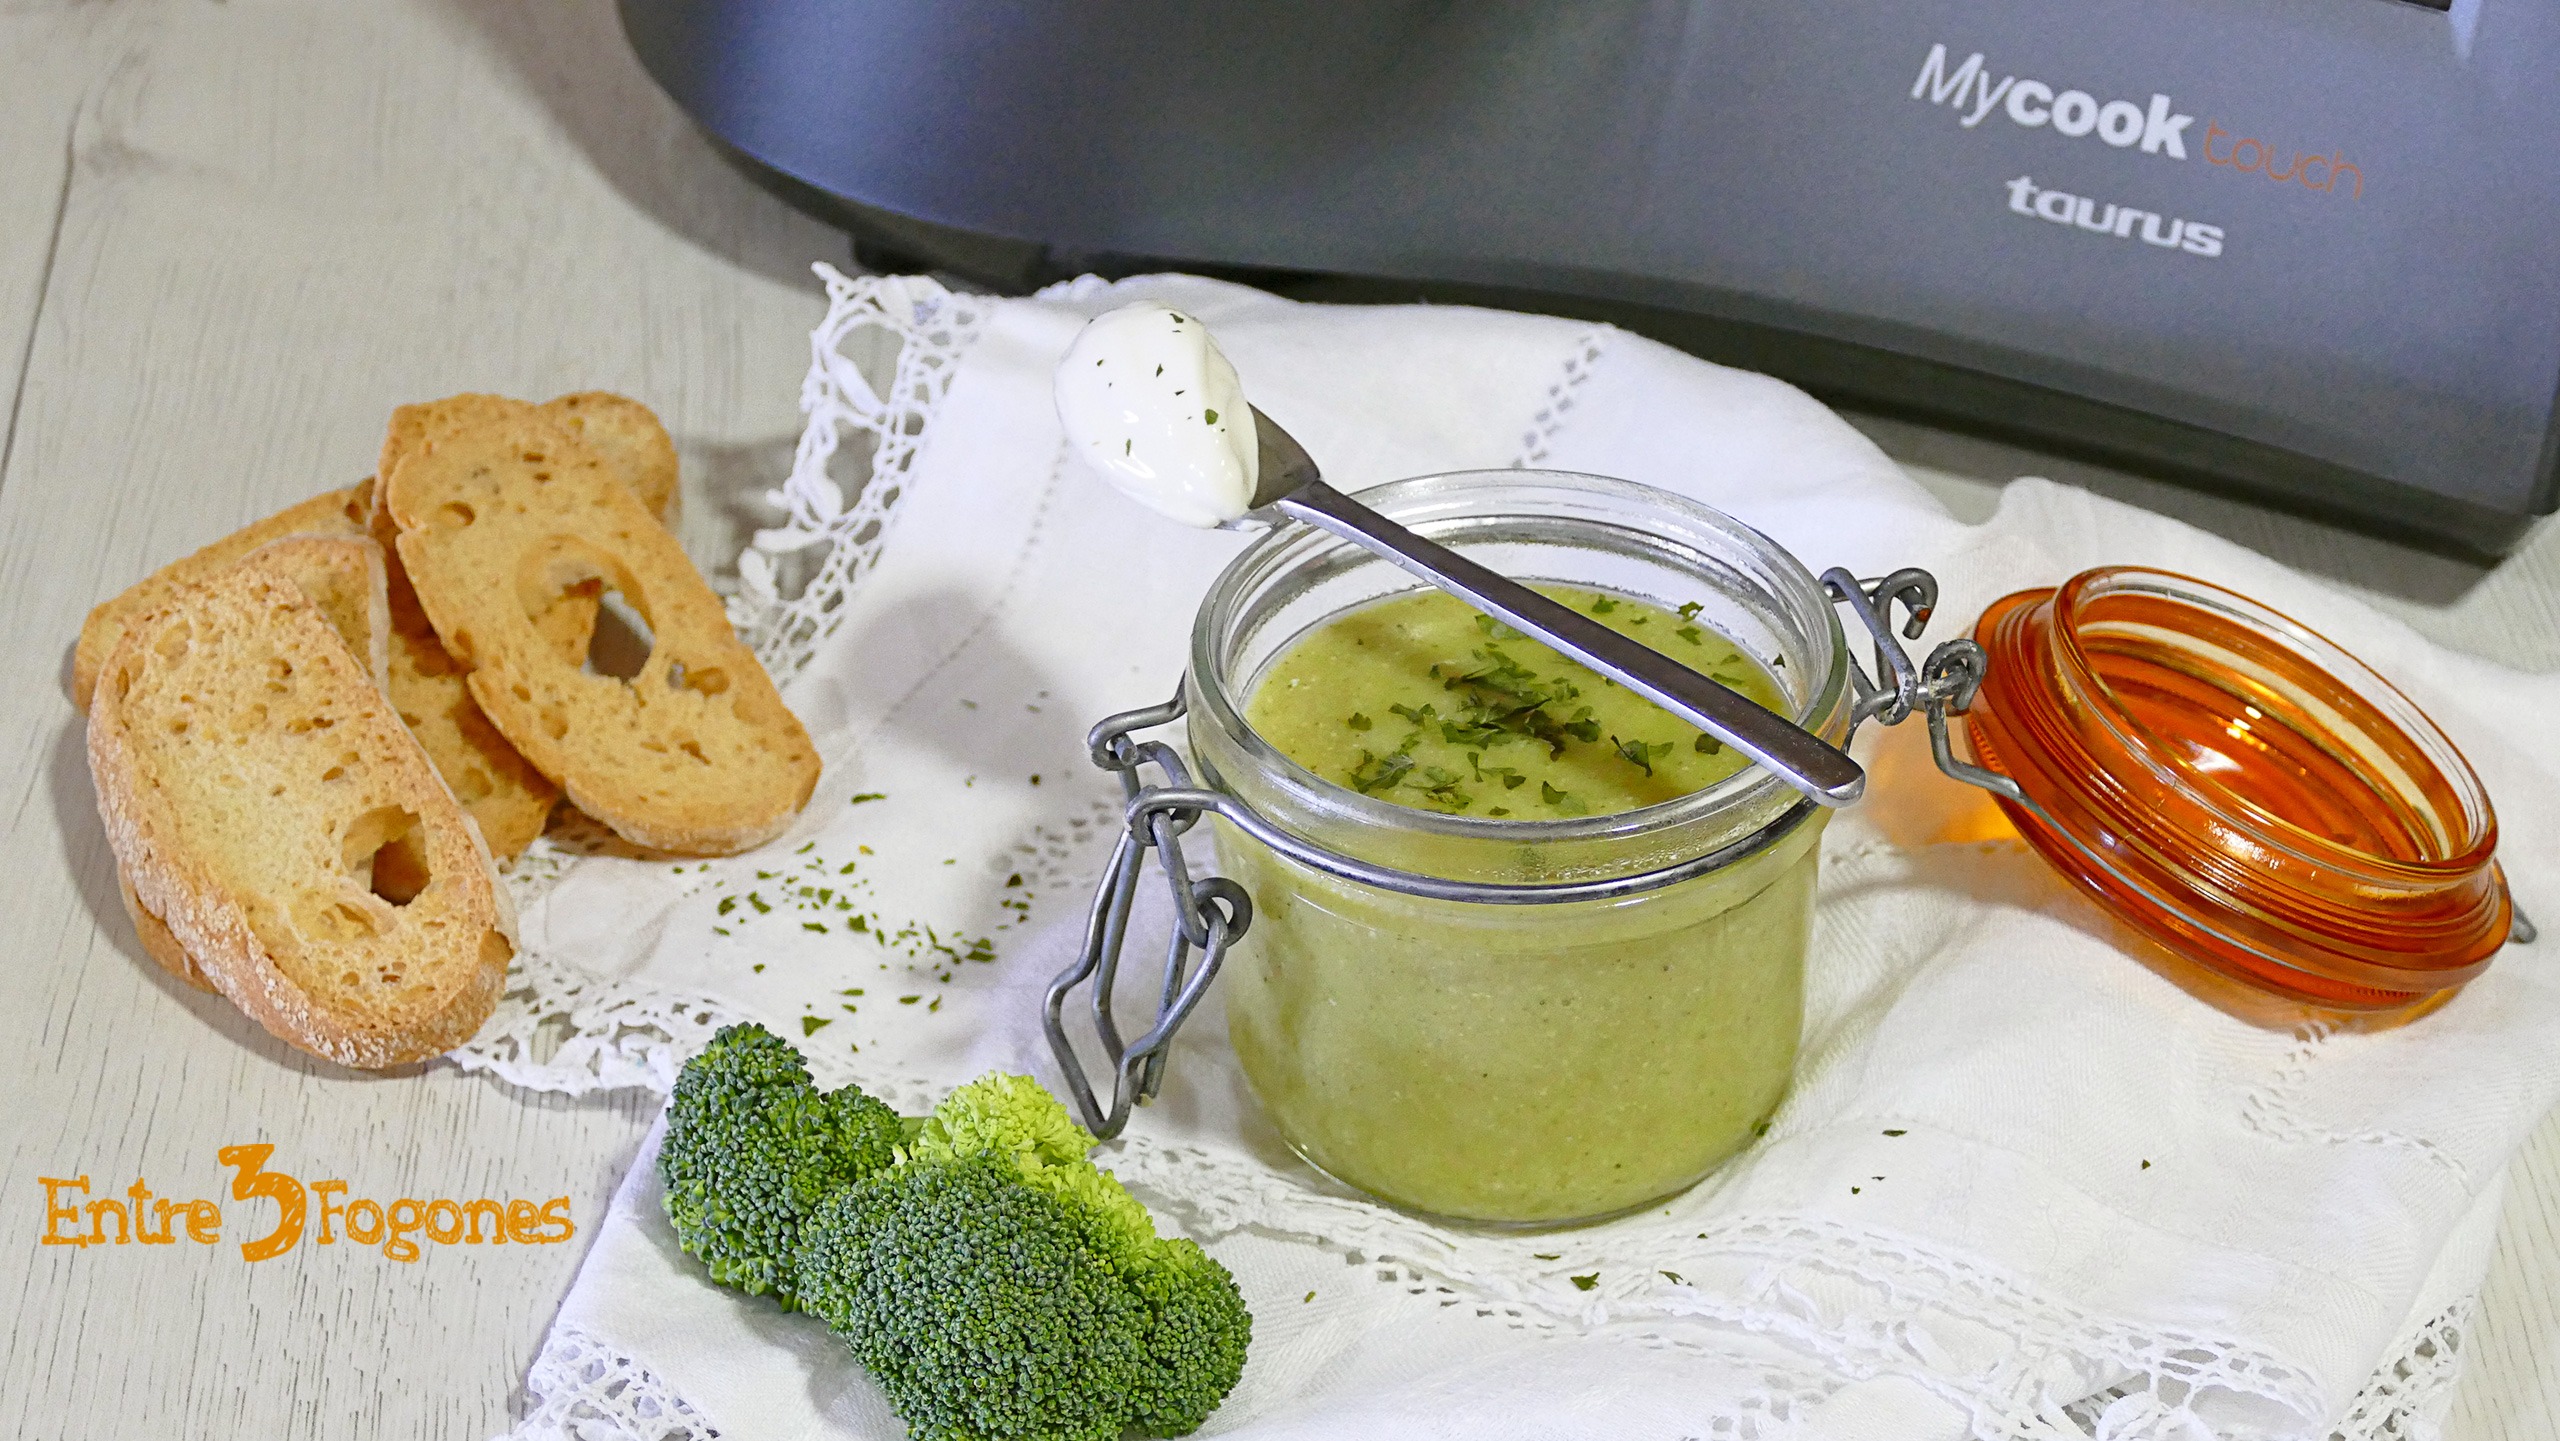 Crema de Brócoli con Hinojo Fresco Mycook